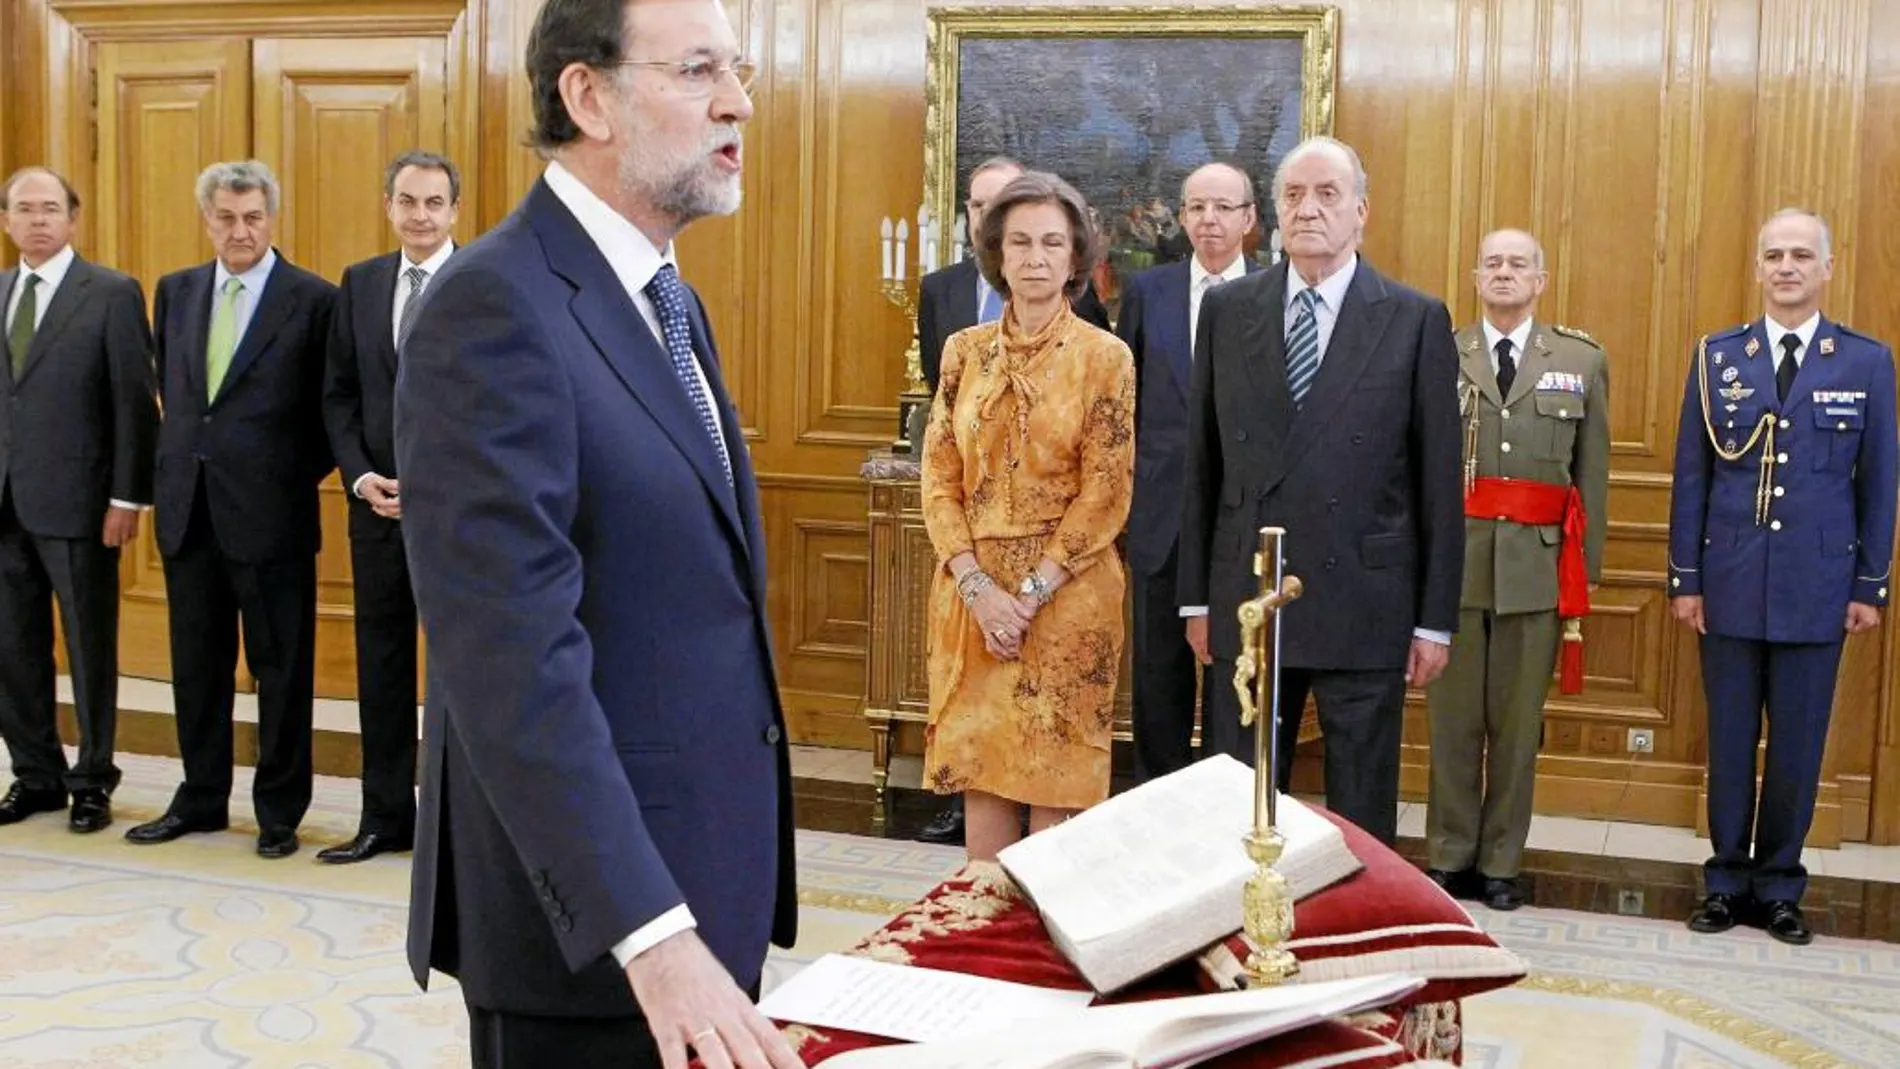 Rajoy jura su cargo en 2011, en la imagen de arriba, ante Juan Carlos I; y abajo, ayer, ante Felipe VI